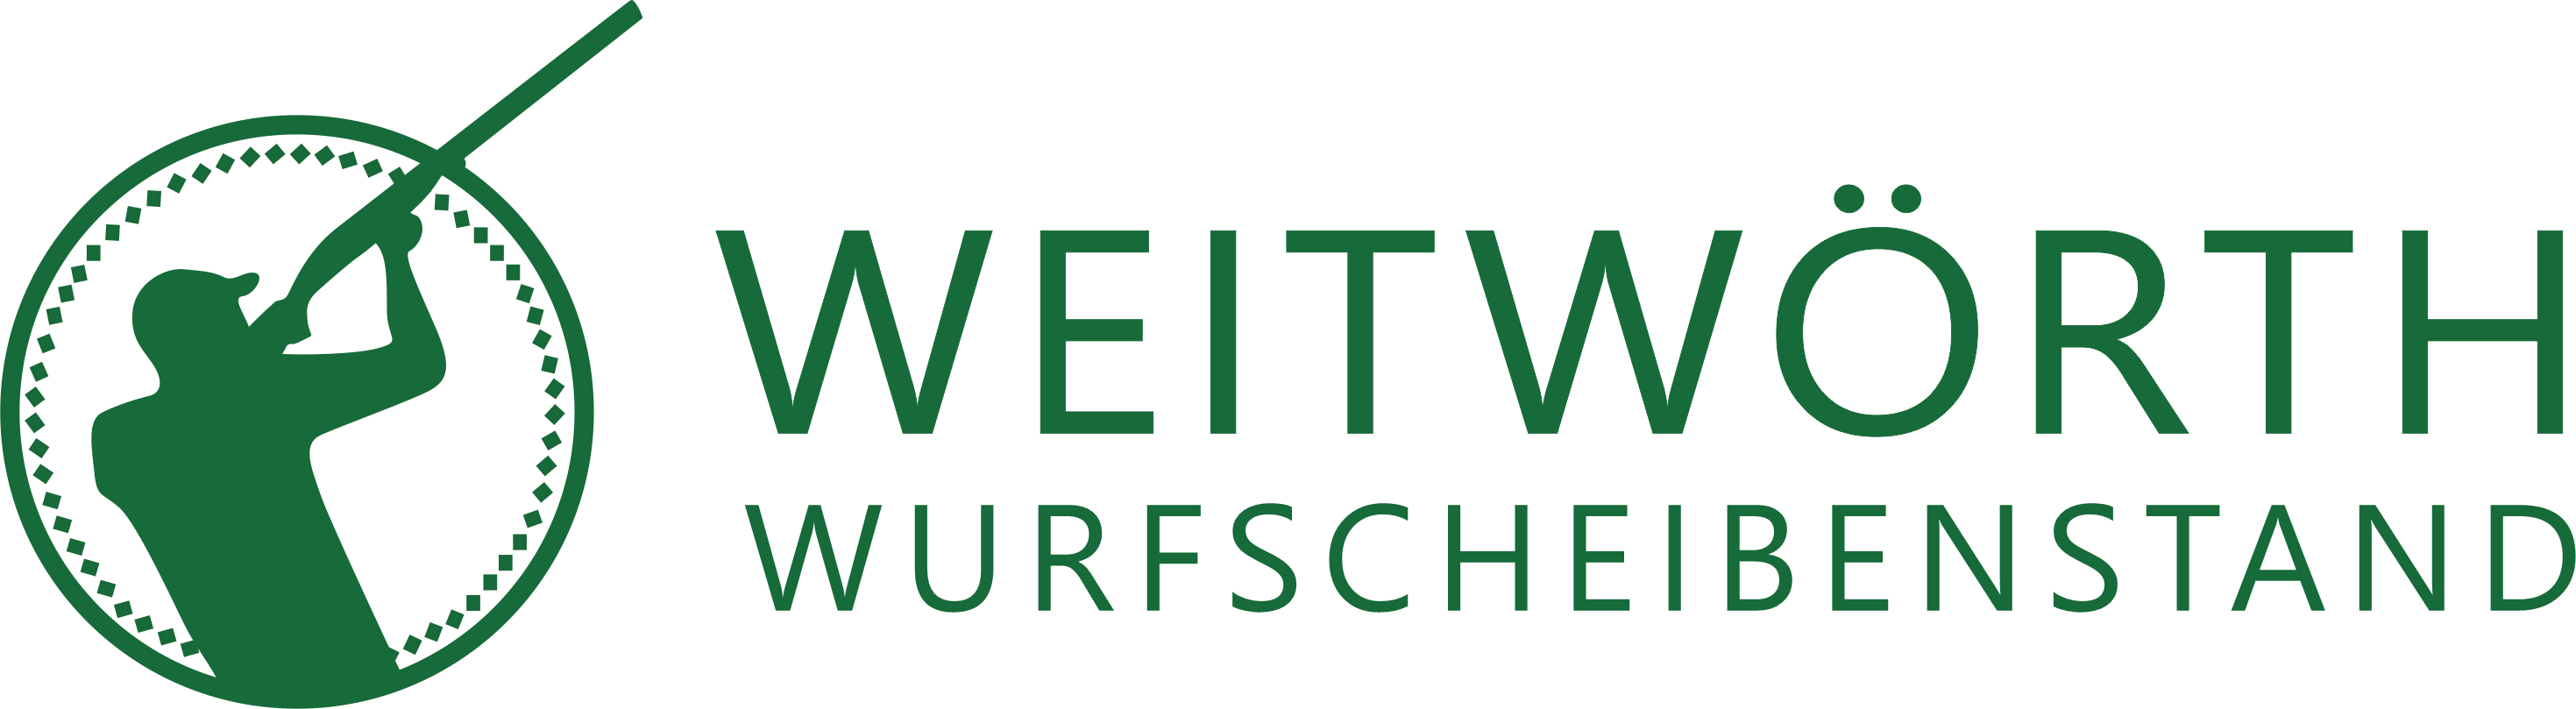 Wurfscheibenstand Weitwörth Logo